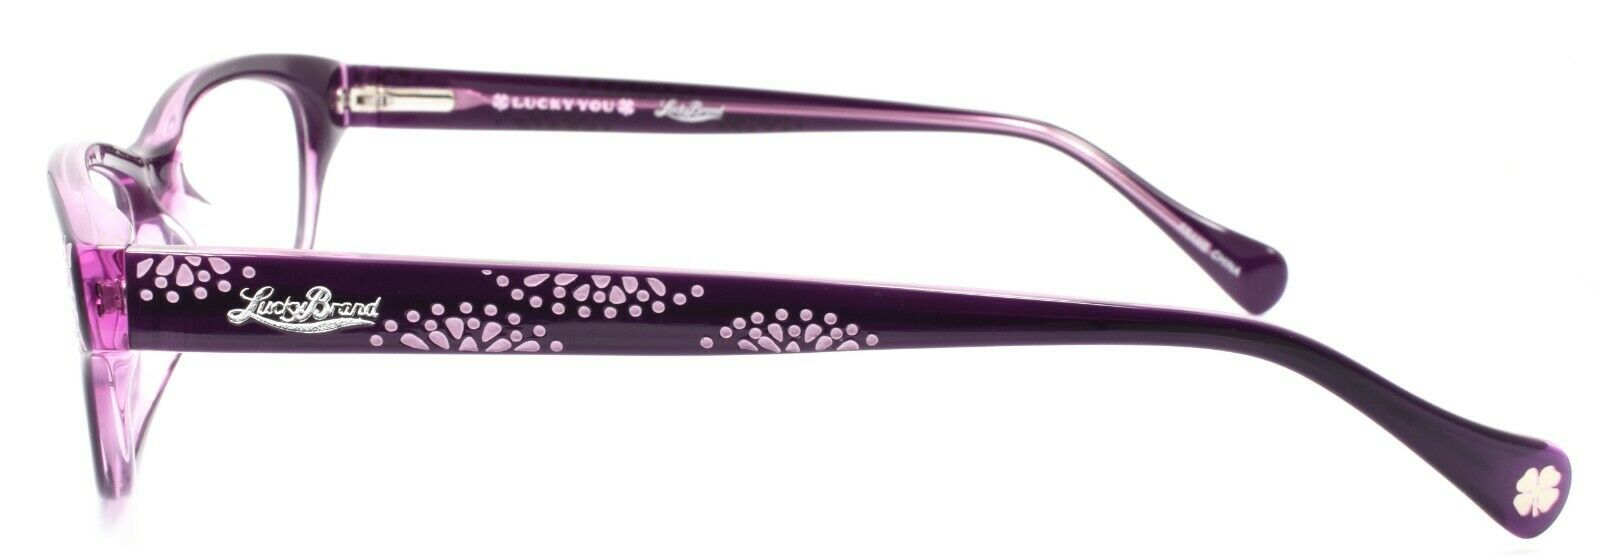 3-LUCKY BRAND Swirl Women's Eyeglasses Frames 53-17-135 Purple + CASE-751286267907-IKSpecs